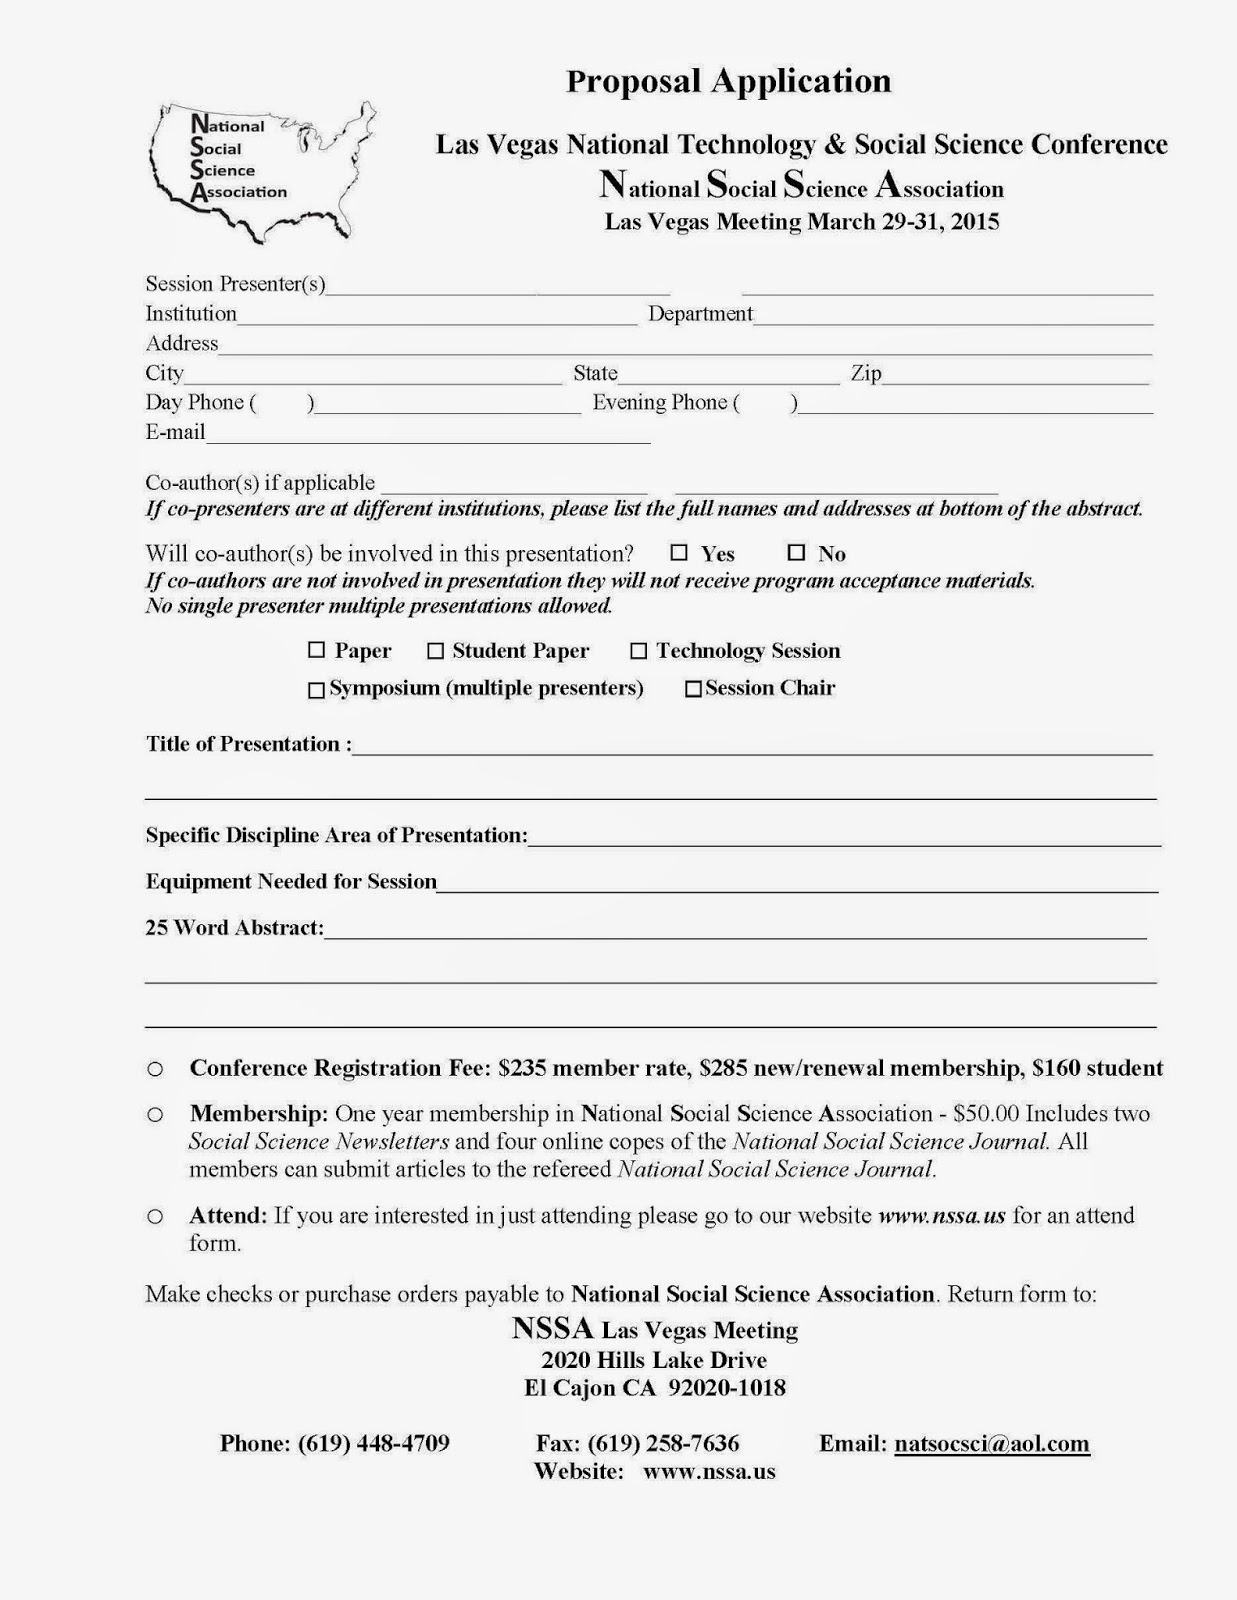 Sample essay for nursing school application